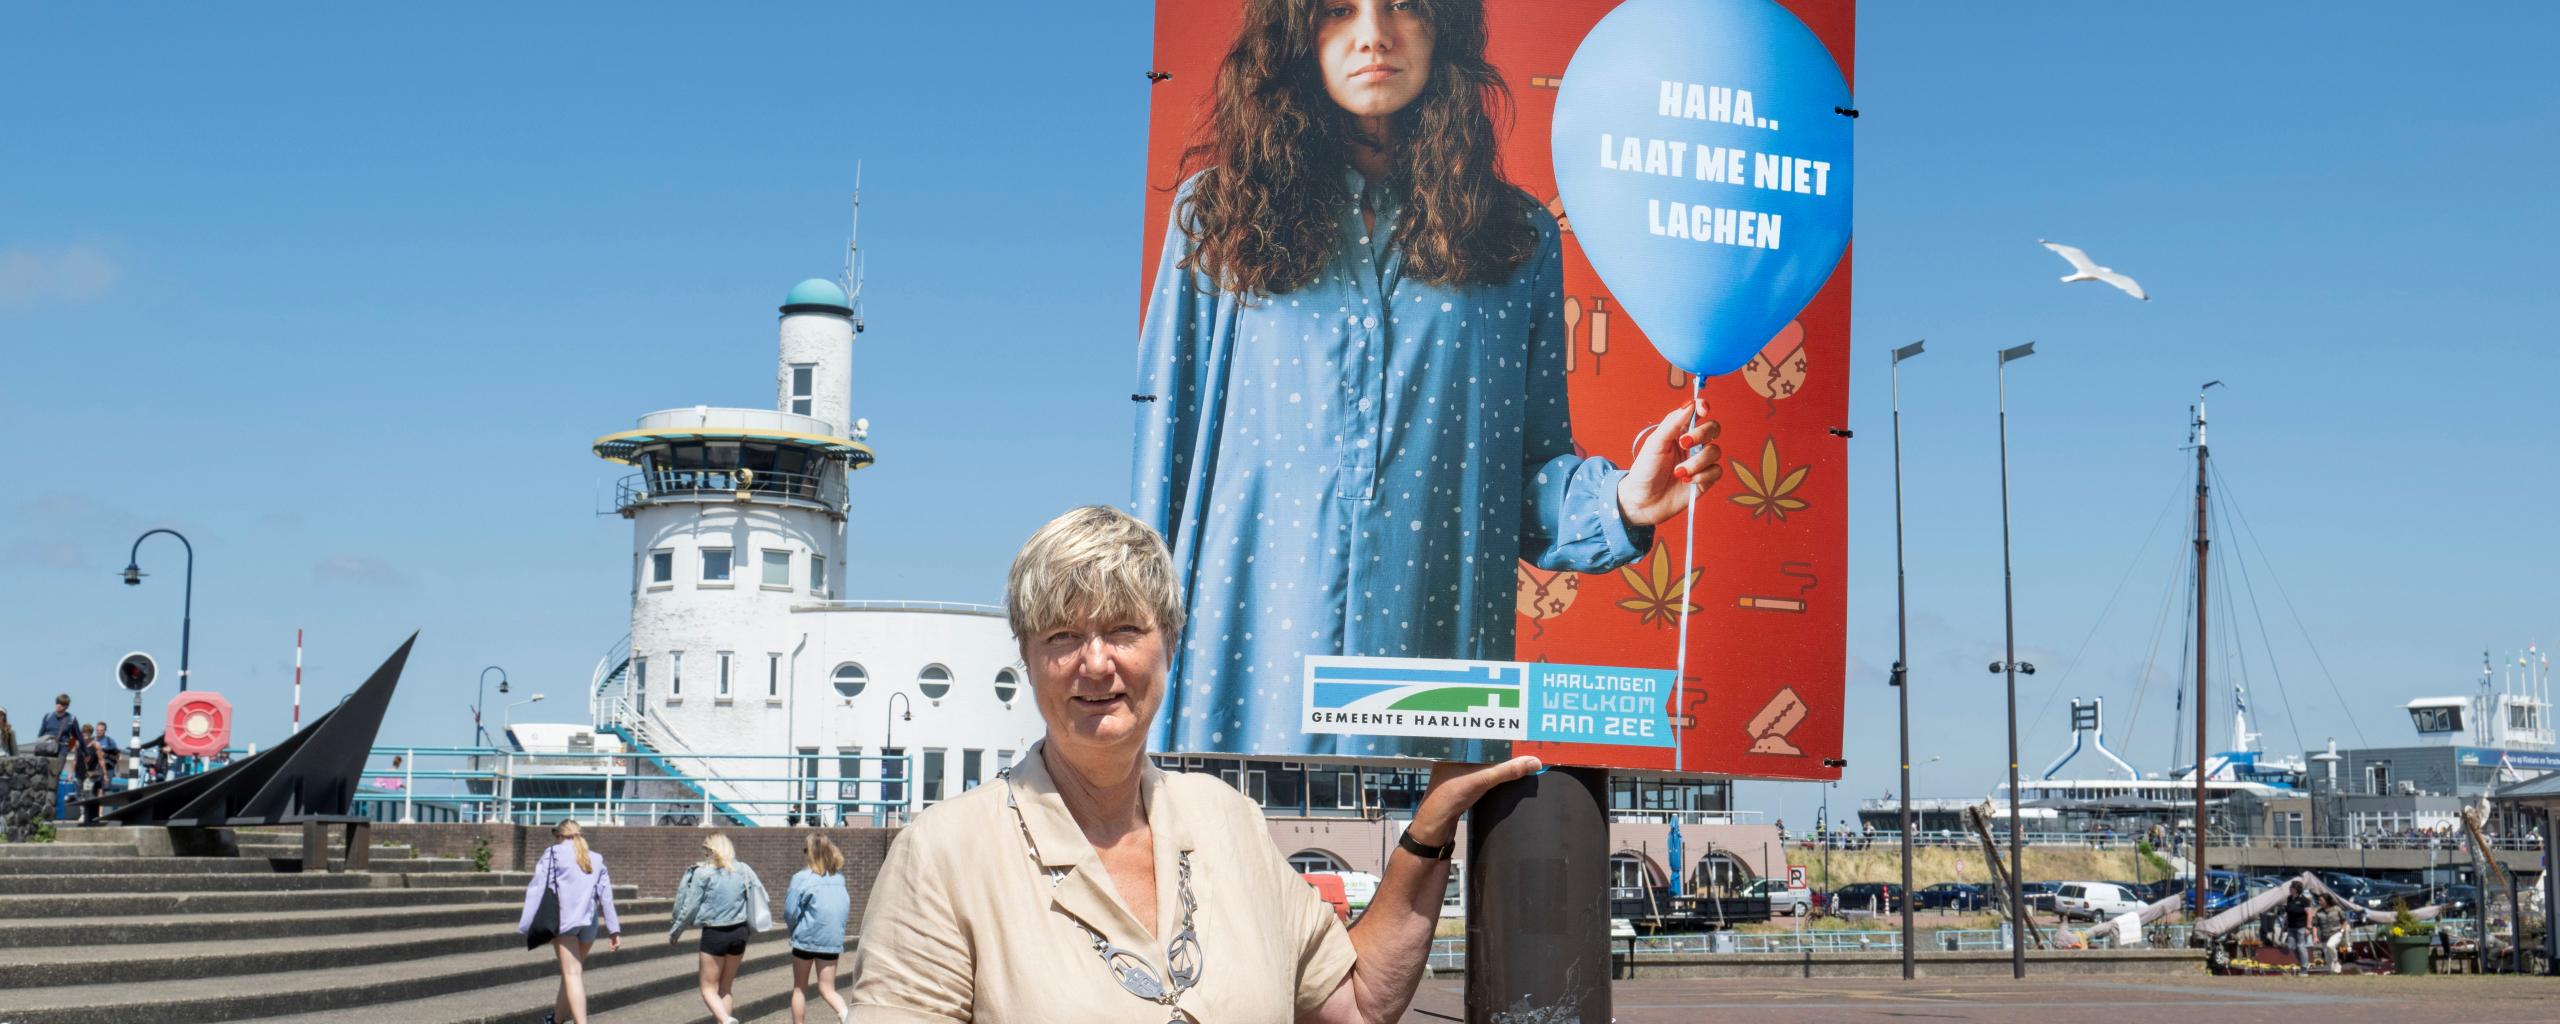 Burgemeester Ina Sjerps bij een bord van de campagne